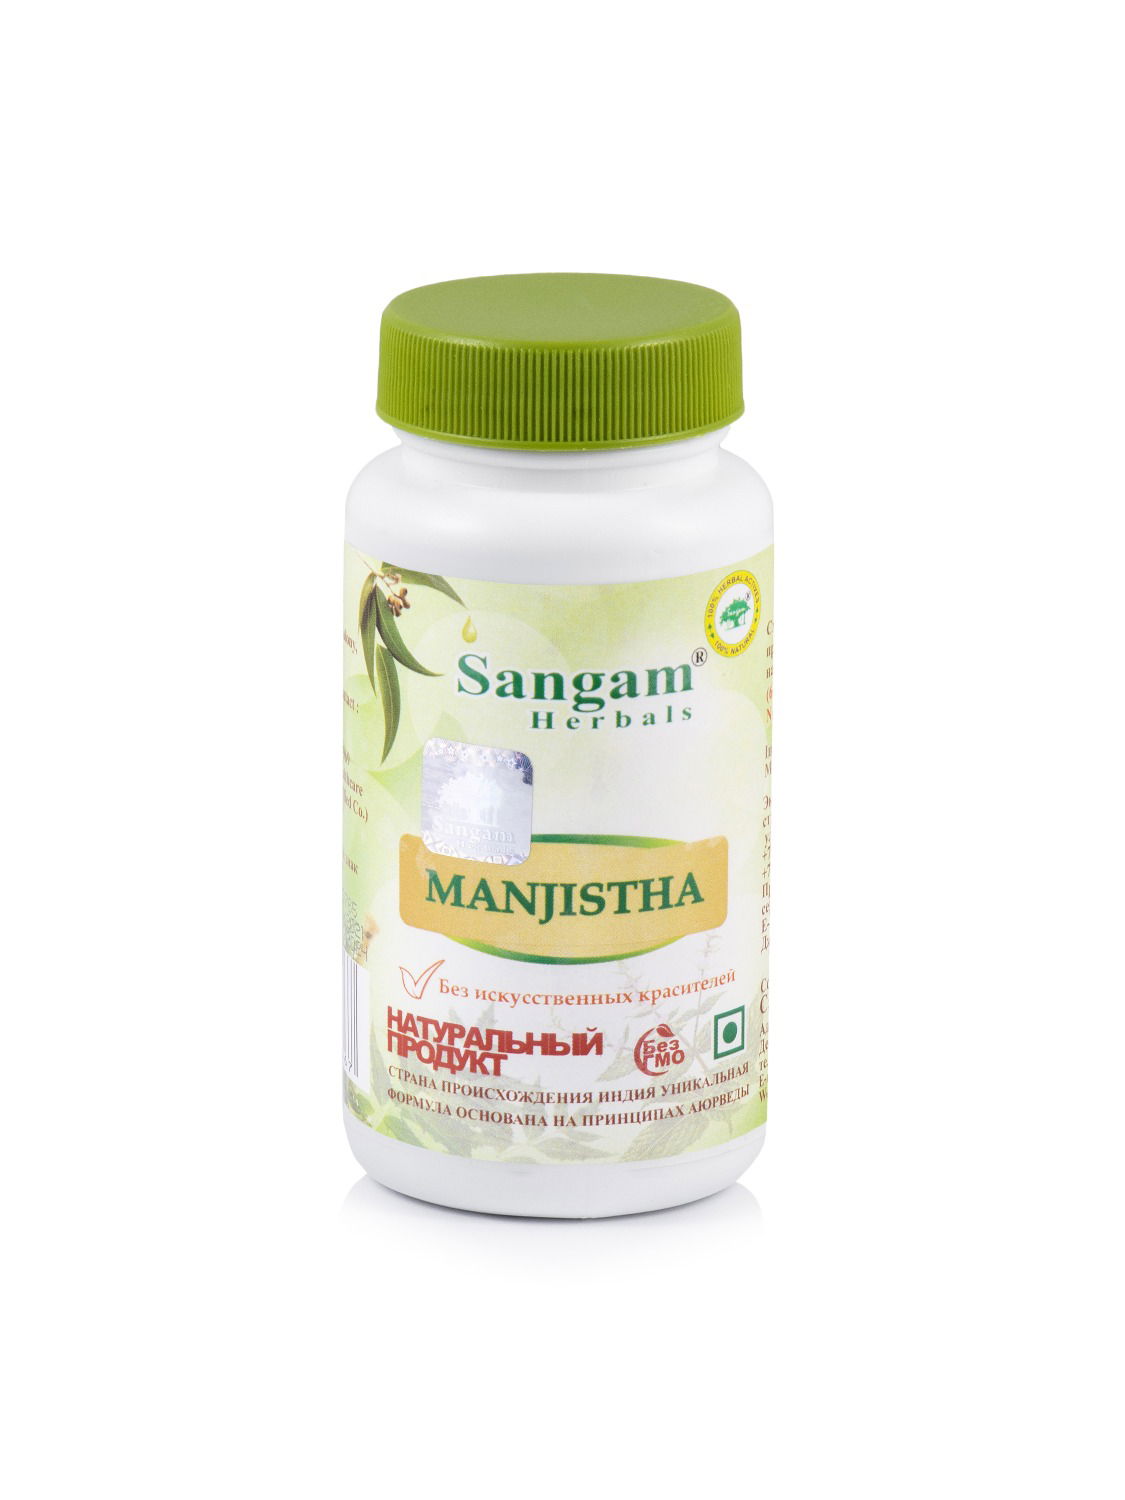 Манжиста Sangam Herbals (60 таблеток). 